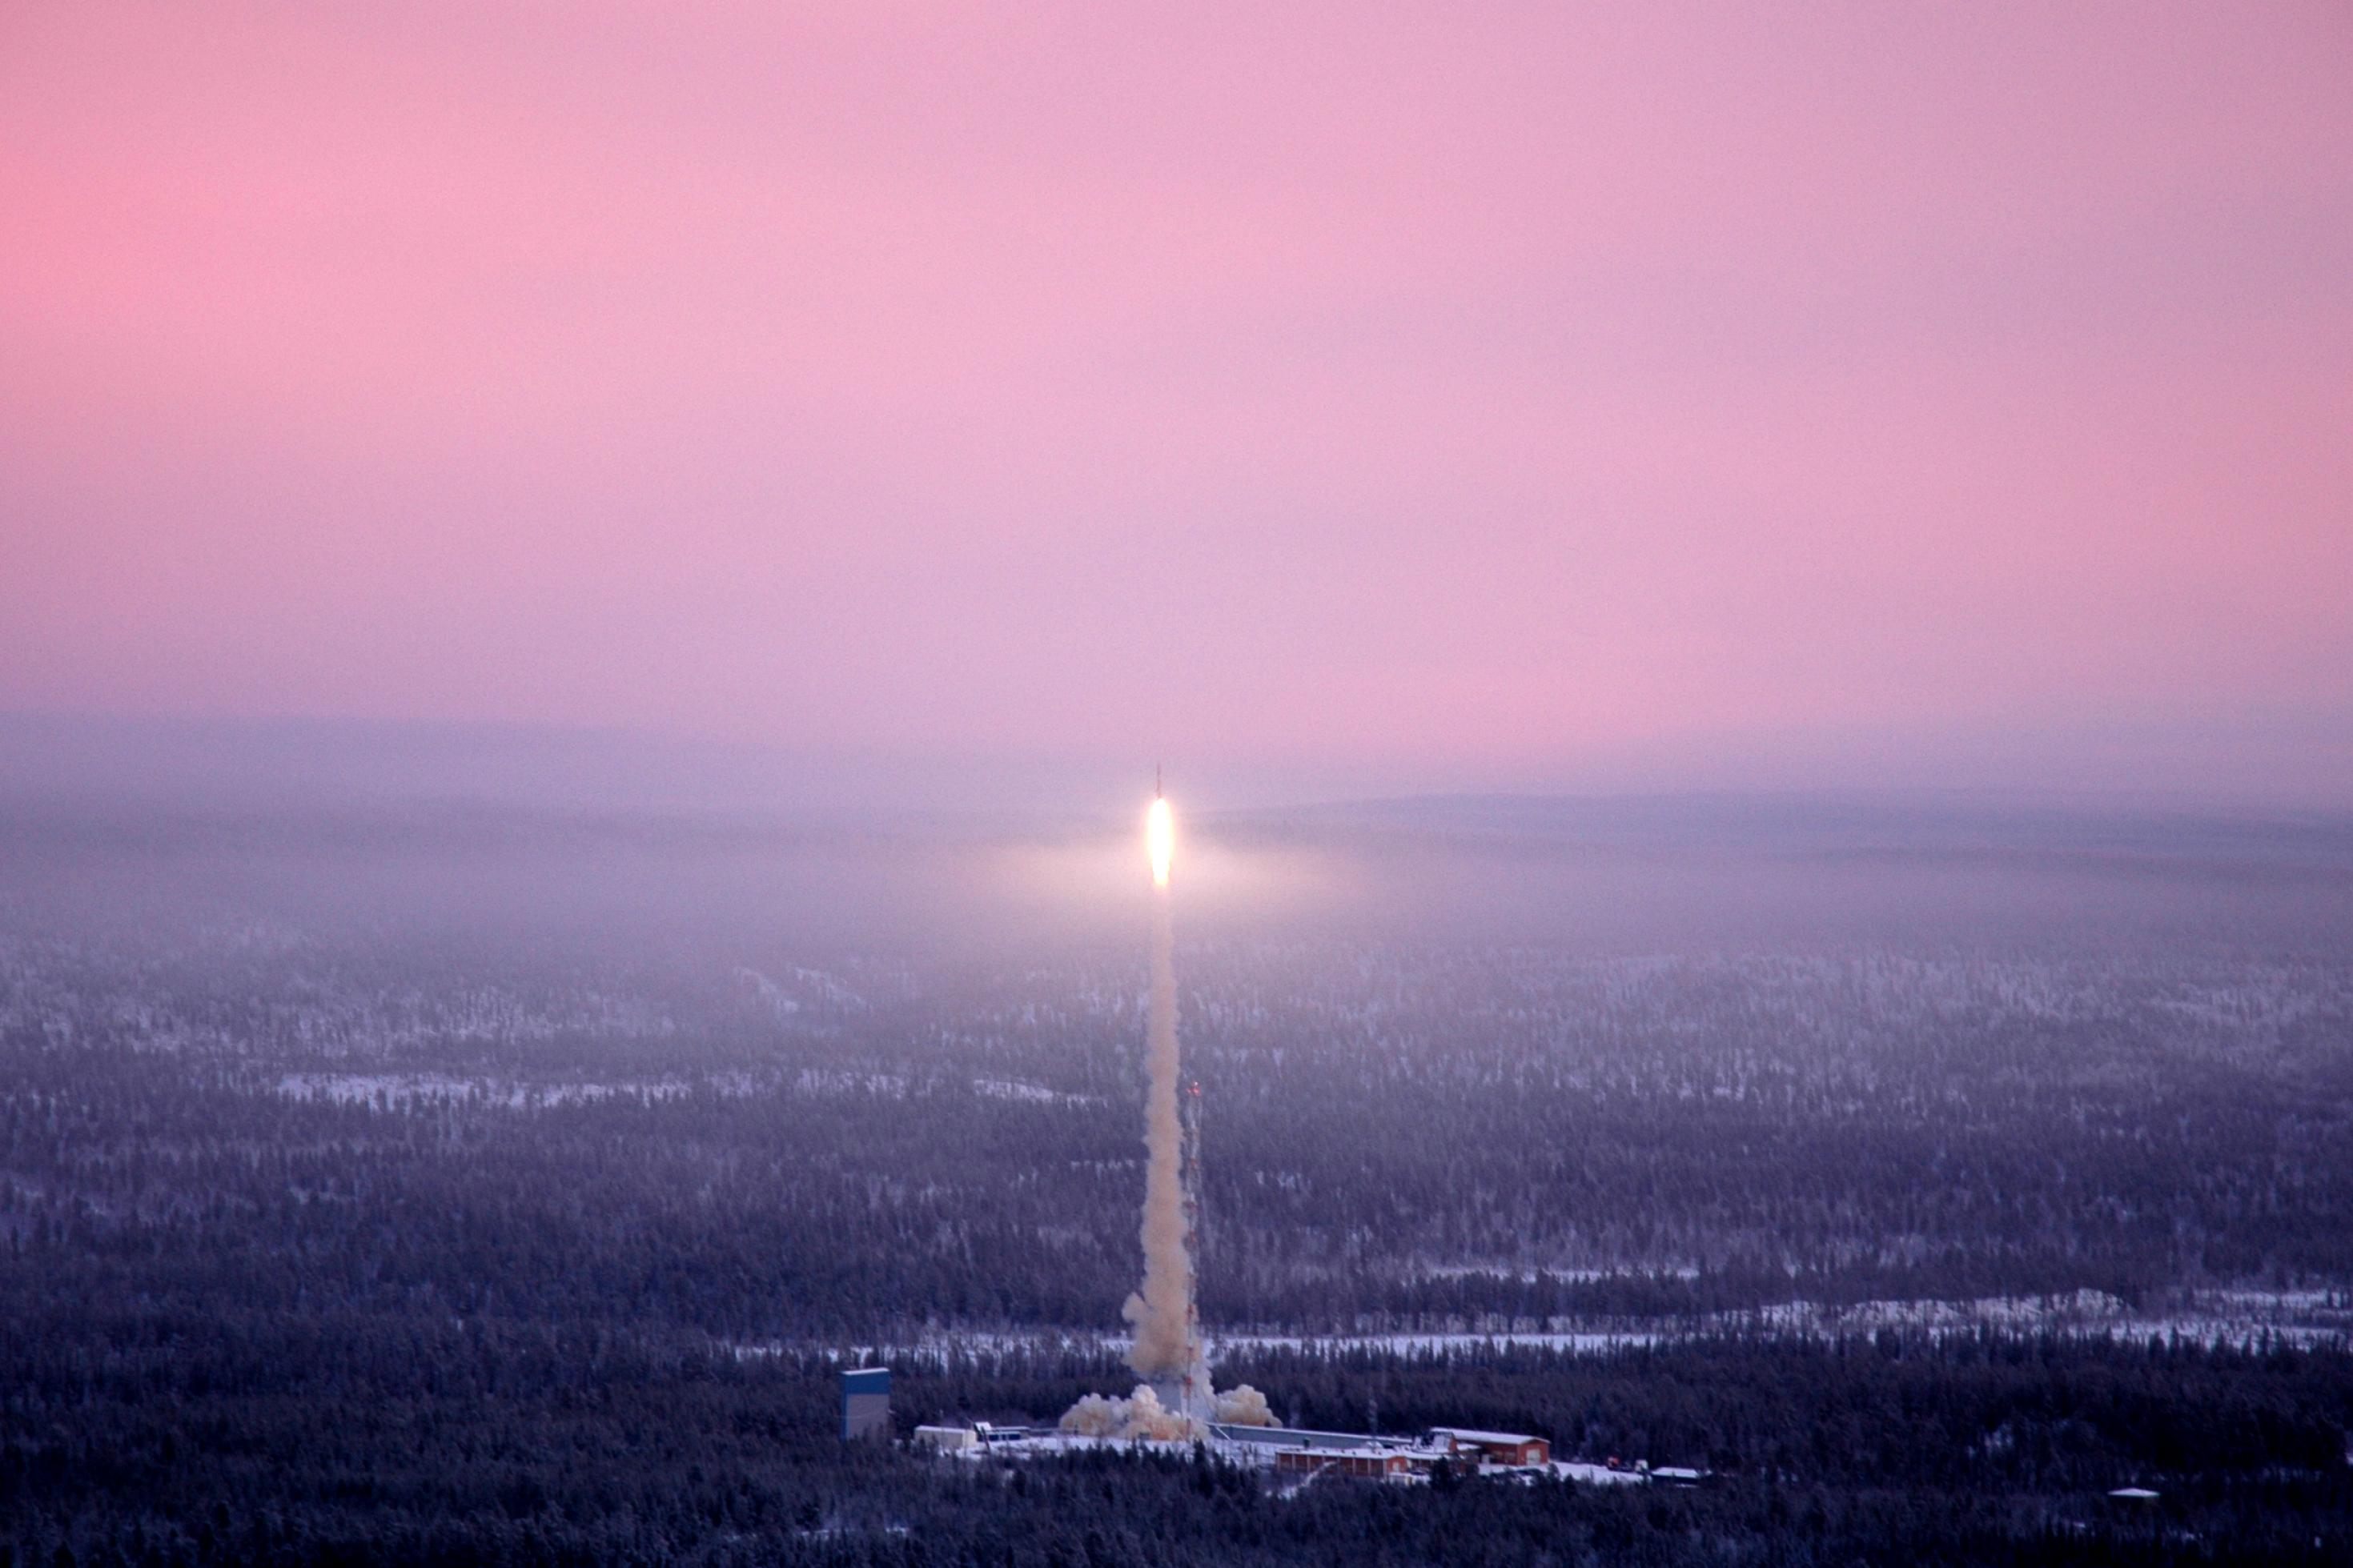 Luftbildaufnahme einer verschneiten, dunstigen Landschaft mit Wald, im Zentrum erstrahlt das Triebwerk einer Rakete im Flug.